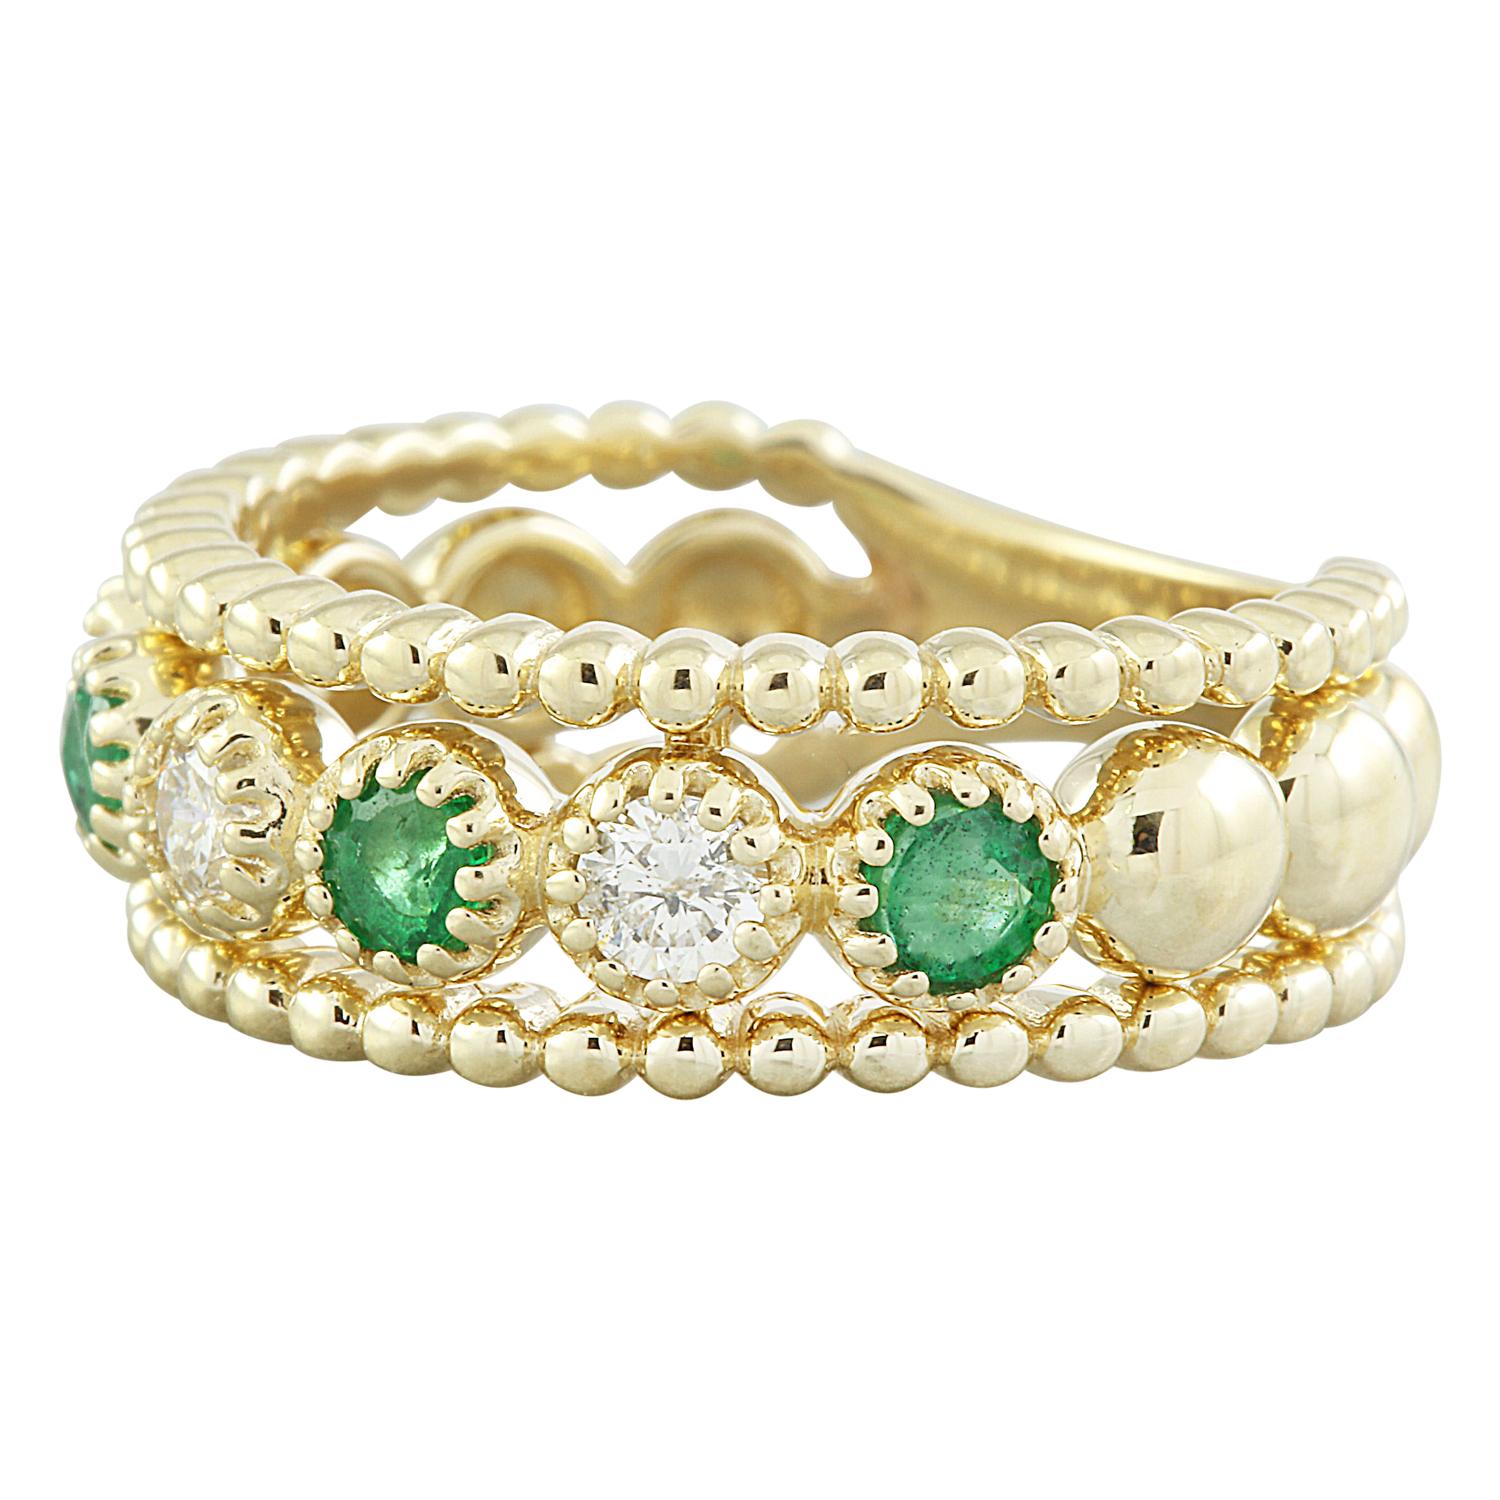 Dieser natürliche Smaragd-Diamantring aus massivem 14-karätigem Gelbgold ist eine zeitlose Verkörperung von Eleganz und ein Fest der raffinierten Schönheit. Mit einem Gesamtgewicht von 0,62 Karat strahlt dieser Ring Raffinesse und Charme aus und ist